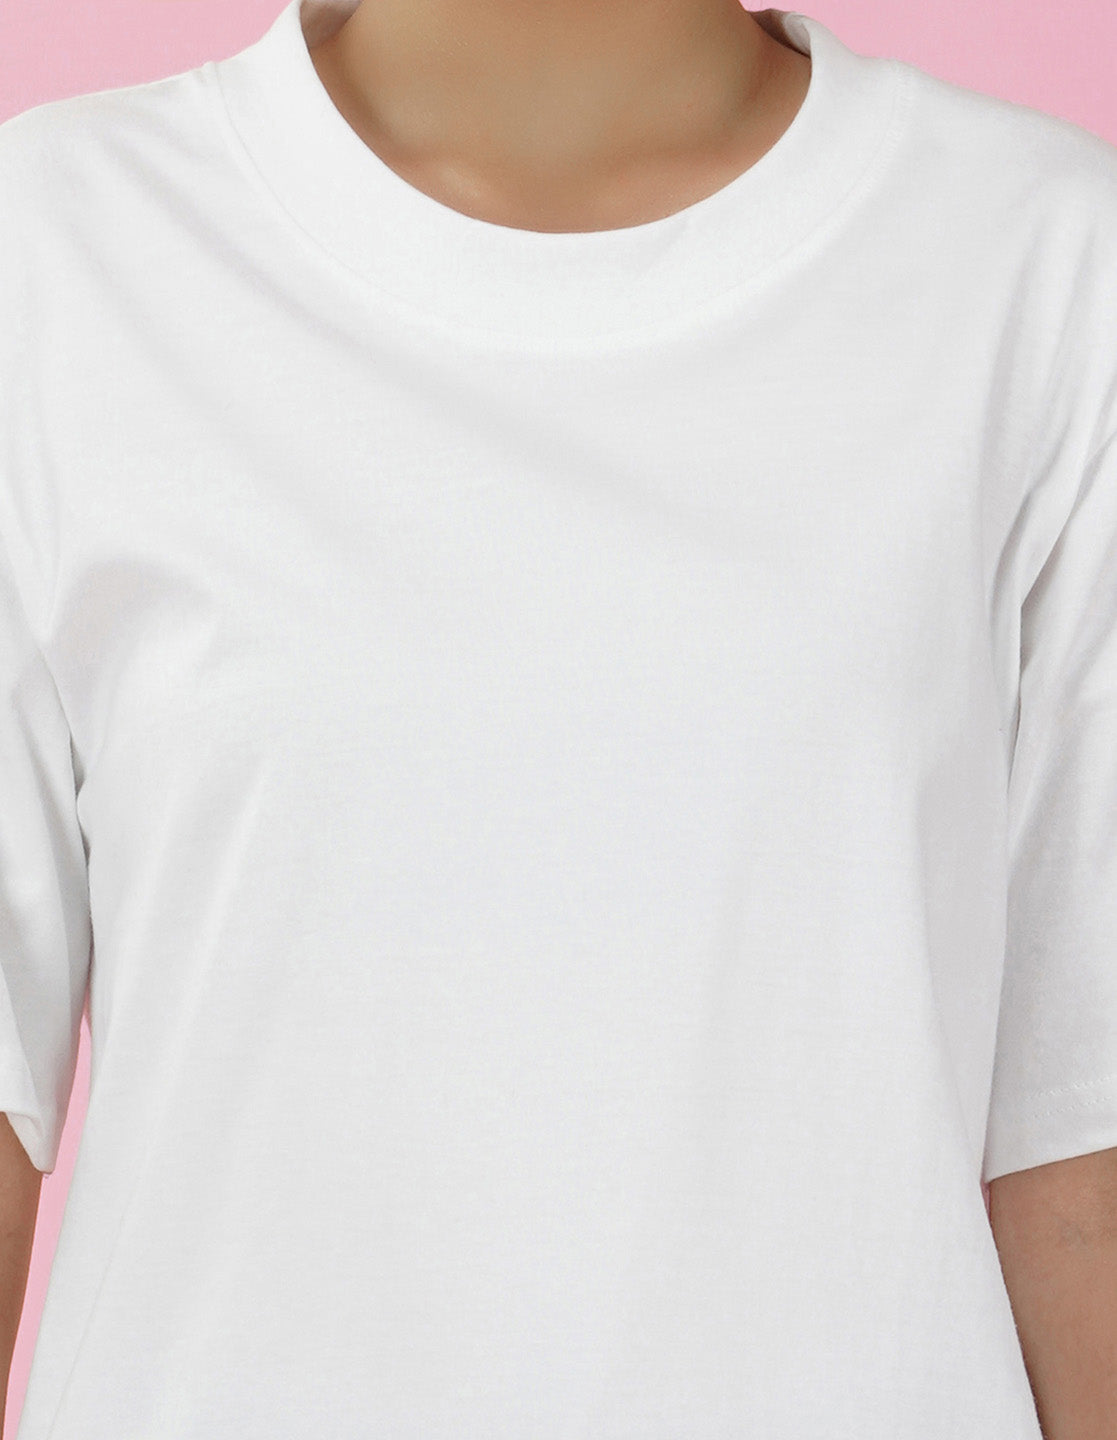 Nusyl Women White Flower print oversized t-shirt